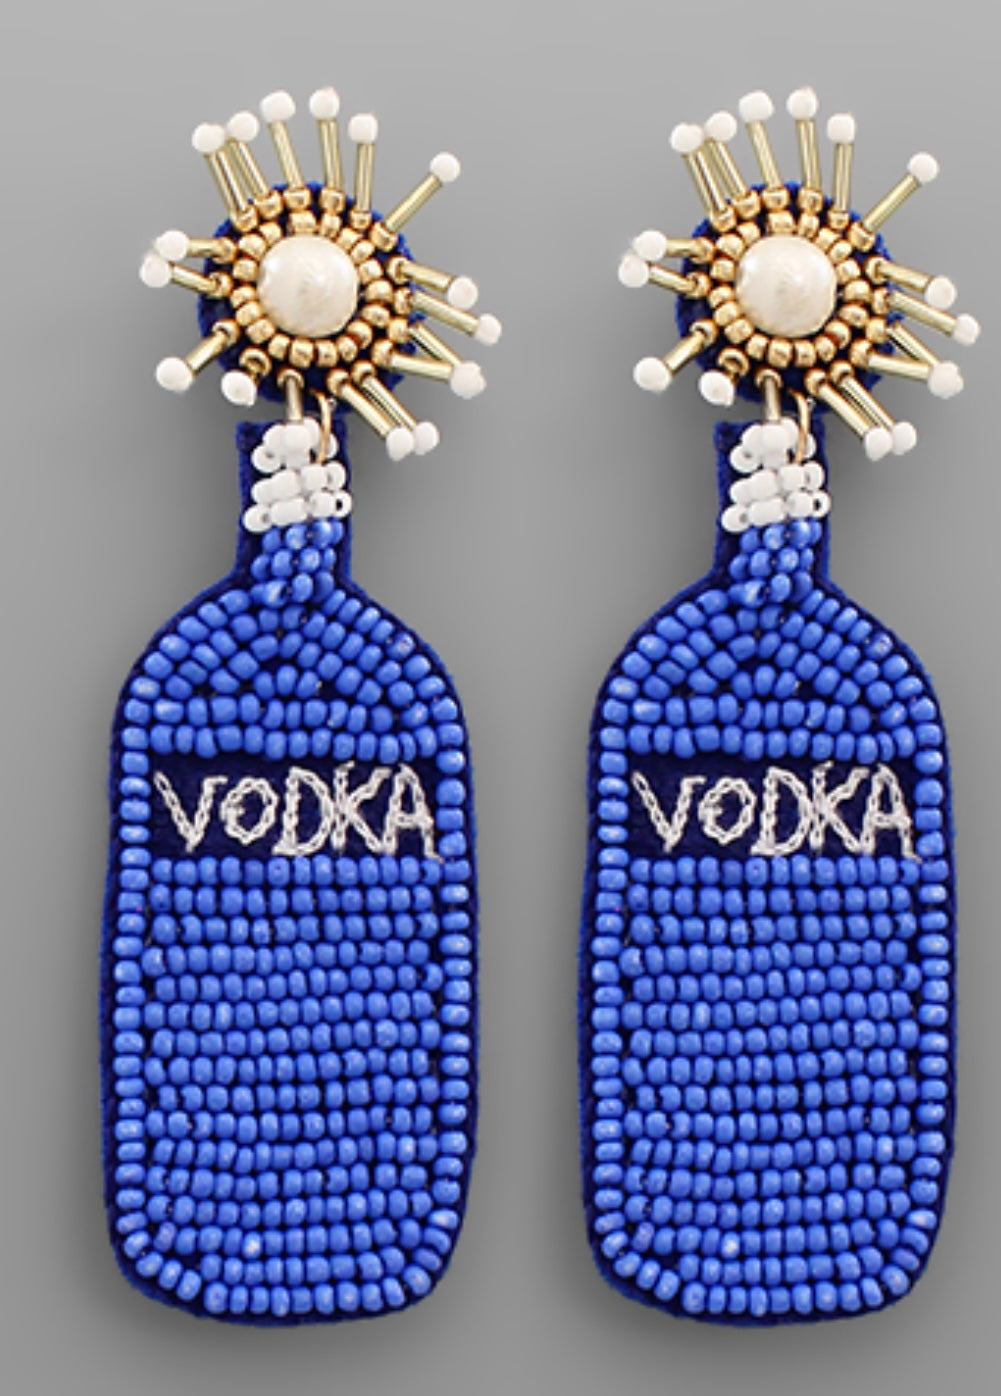 Vodka Earrings in Blue